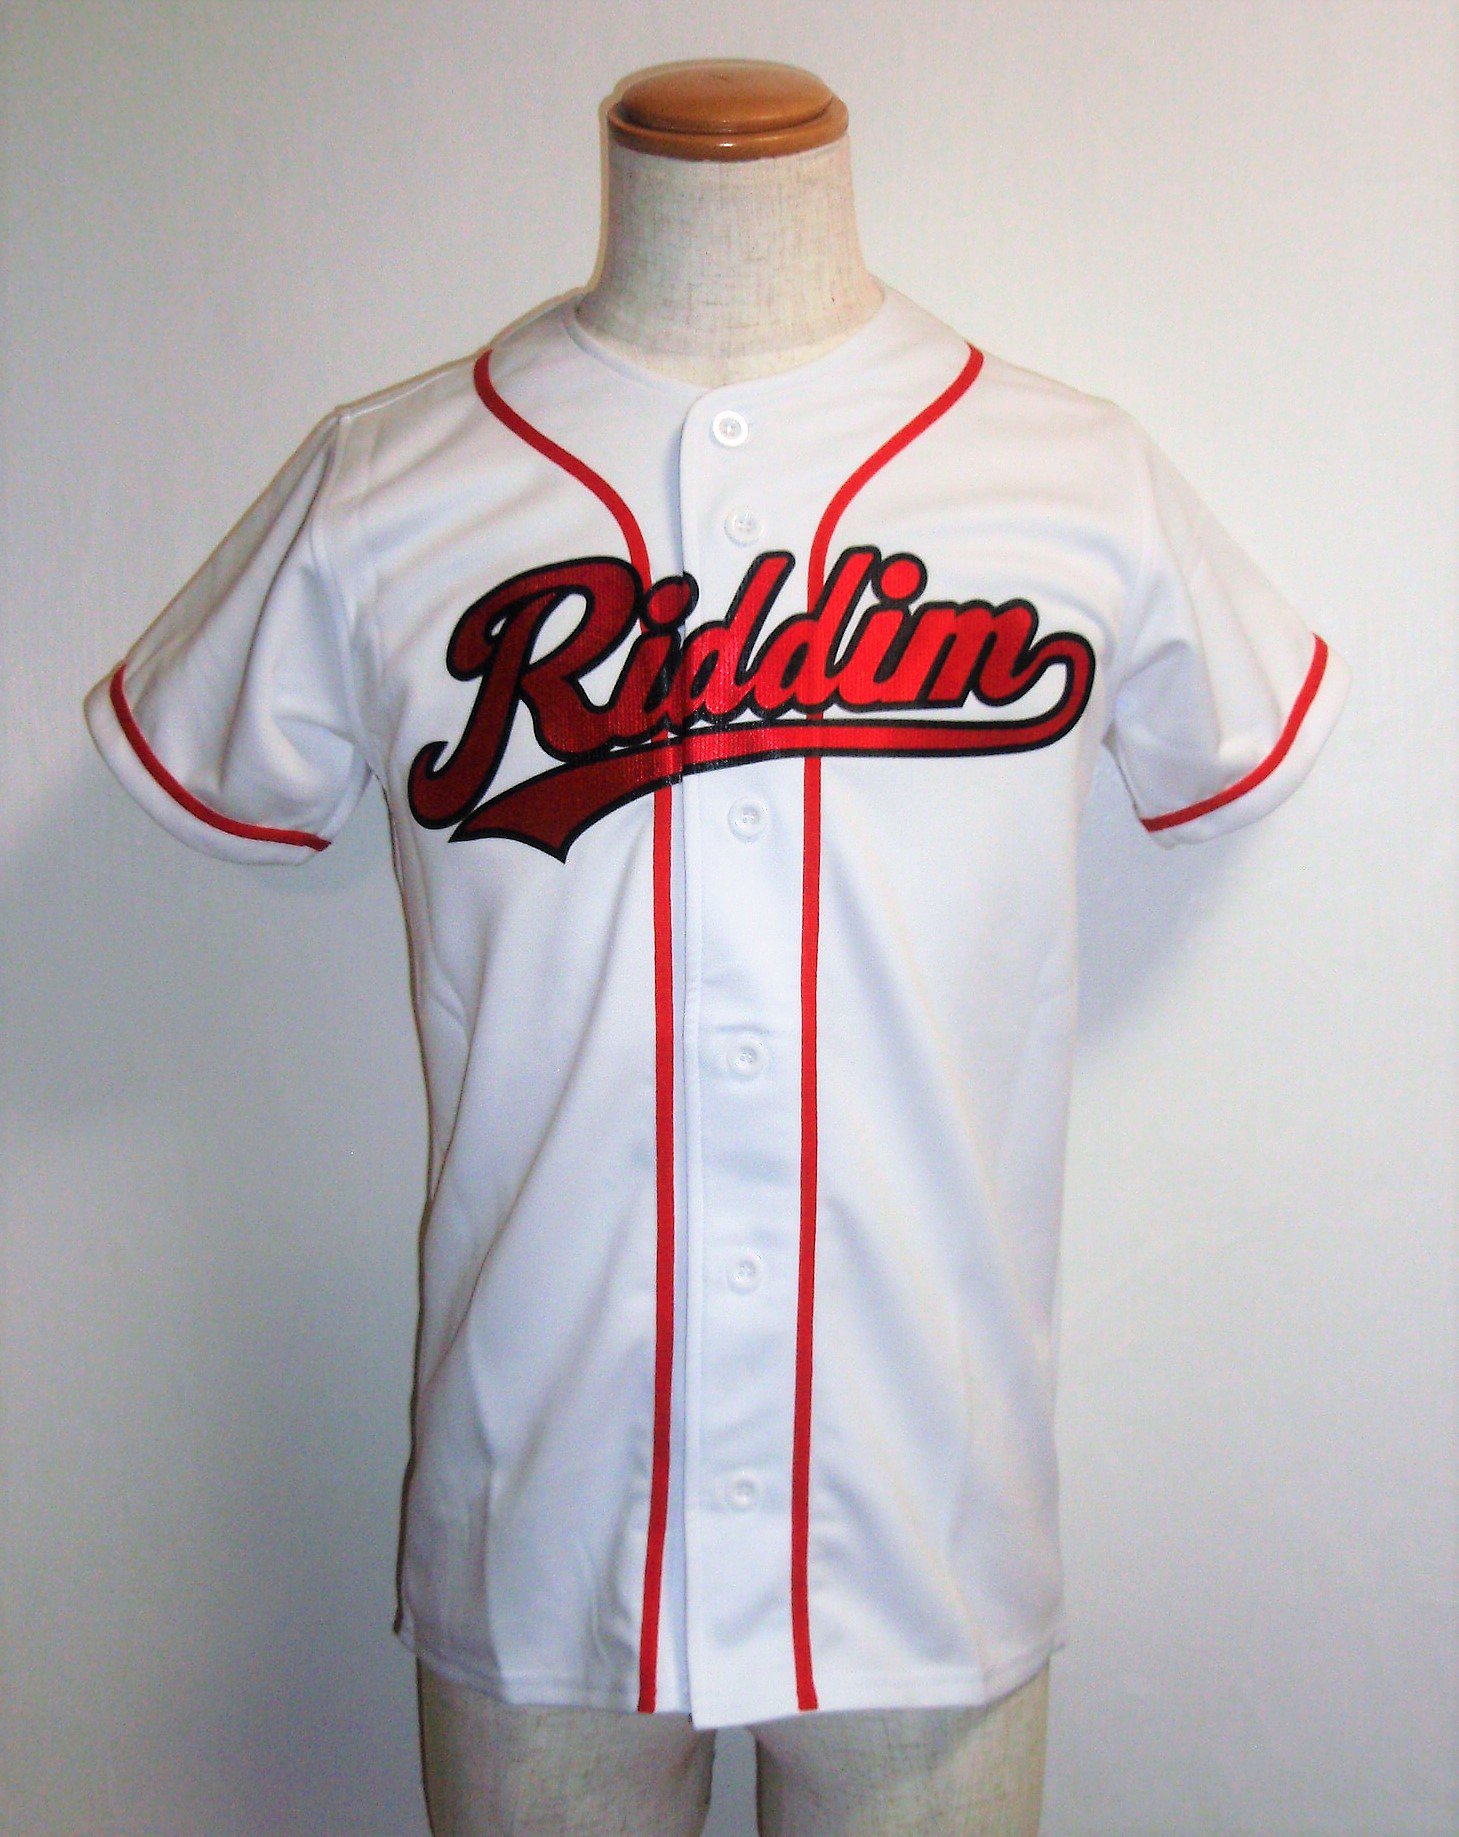 スポーツｎ ｂ ｕ シンプルなホワイトのベースボールシャツに赤 黒のロゴが映える1枚 ベーシックベースボールシャツ 1950円 無地価格 T Co H6e1ejfwnl 野球ユニフォーム 野球ユニフォームオーダー製作 ベースボールシャツ ベースボール